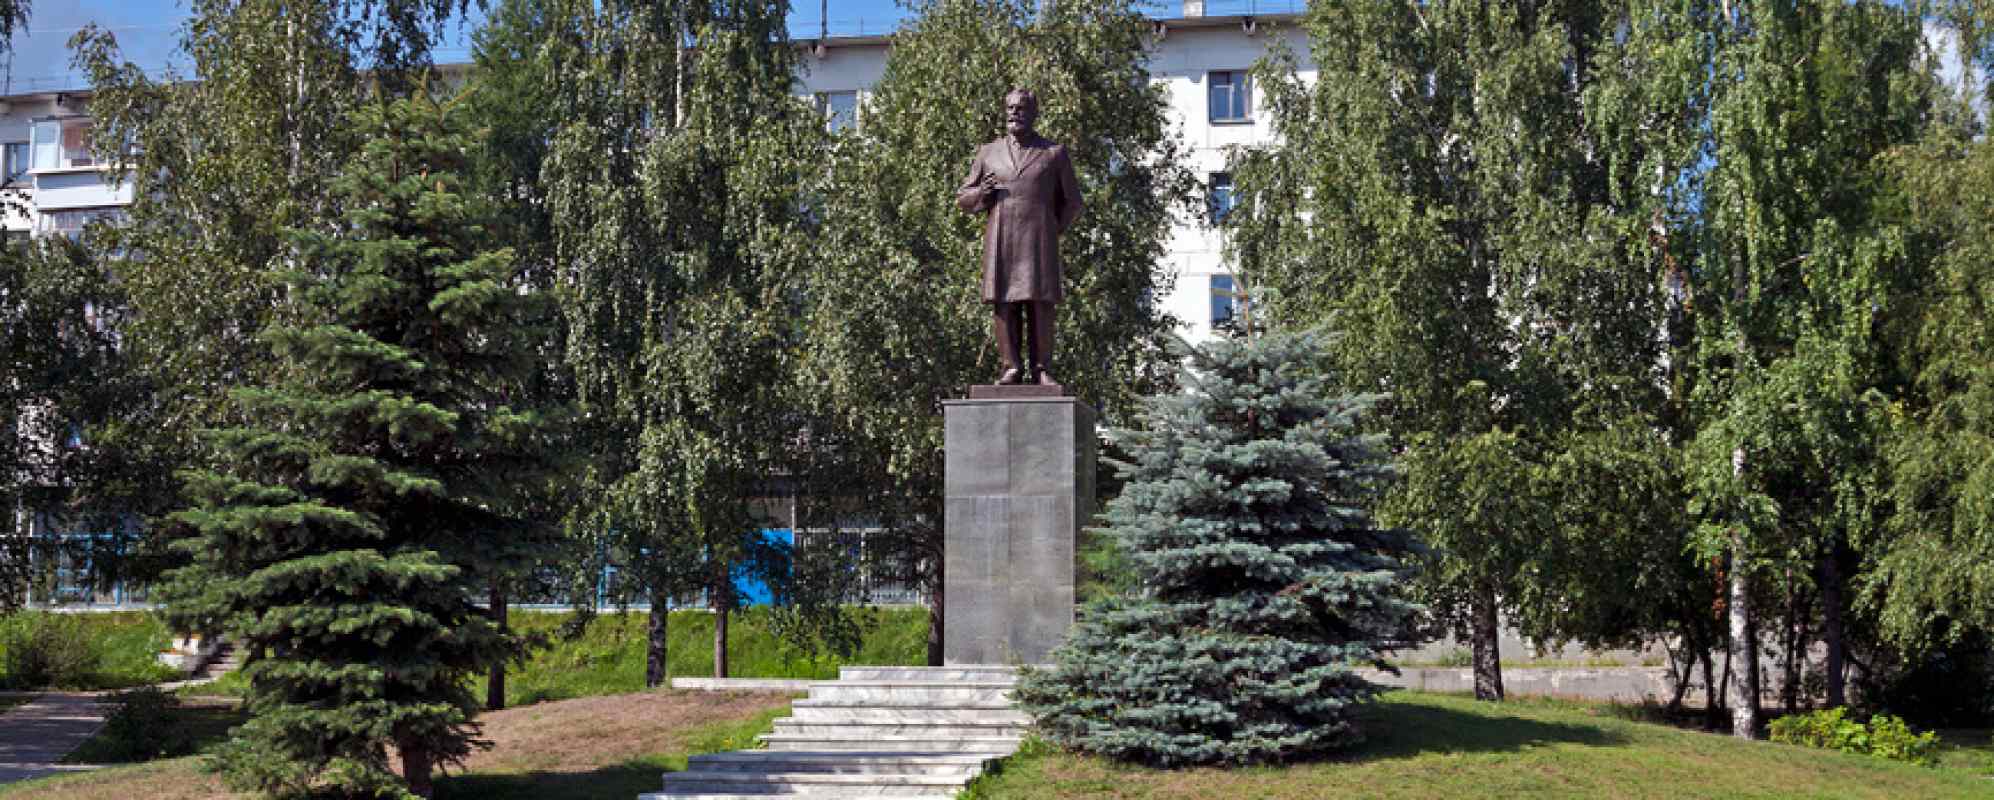 Памятник П. И. Чайковскому на улице Ленина (Чайковский)